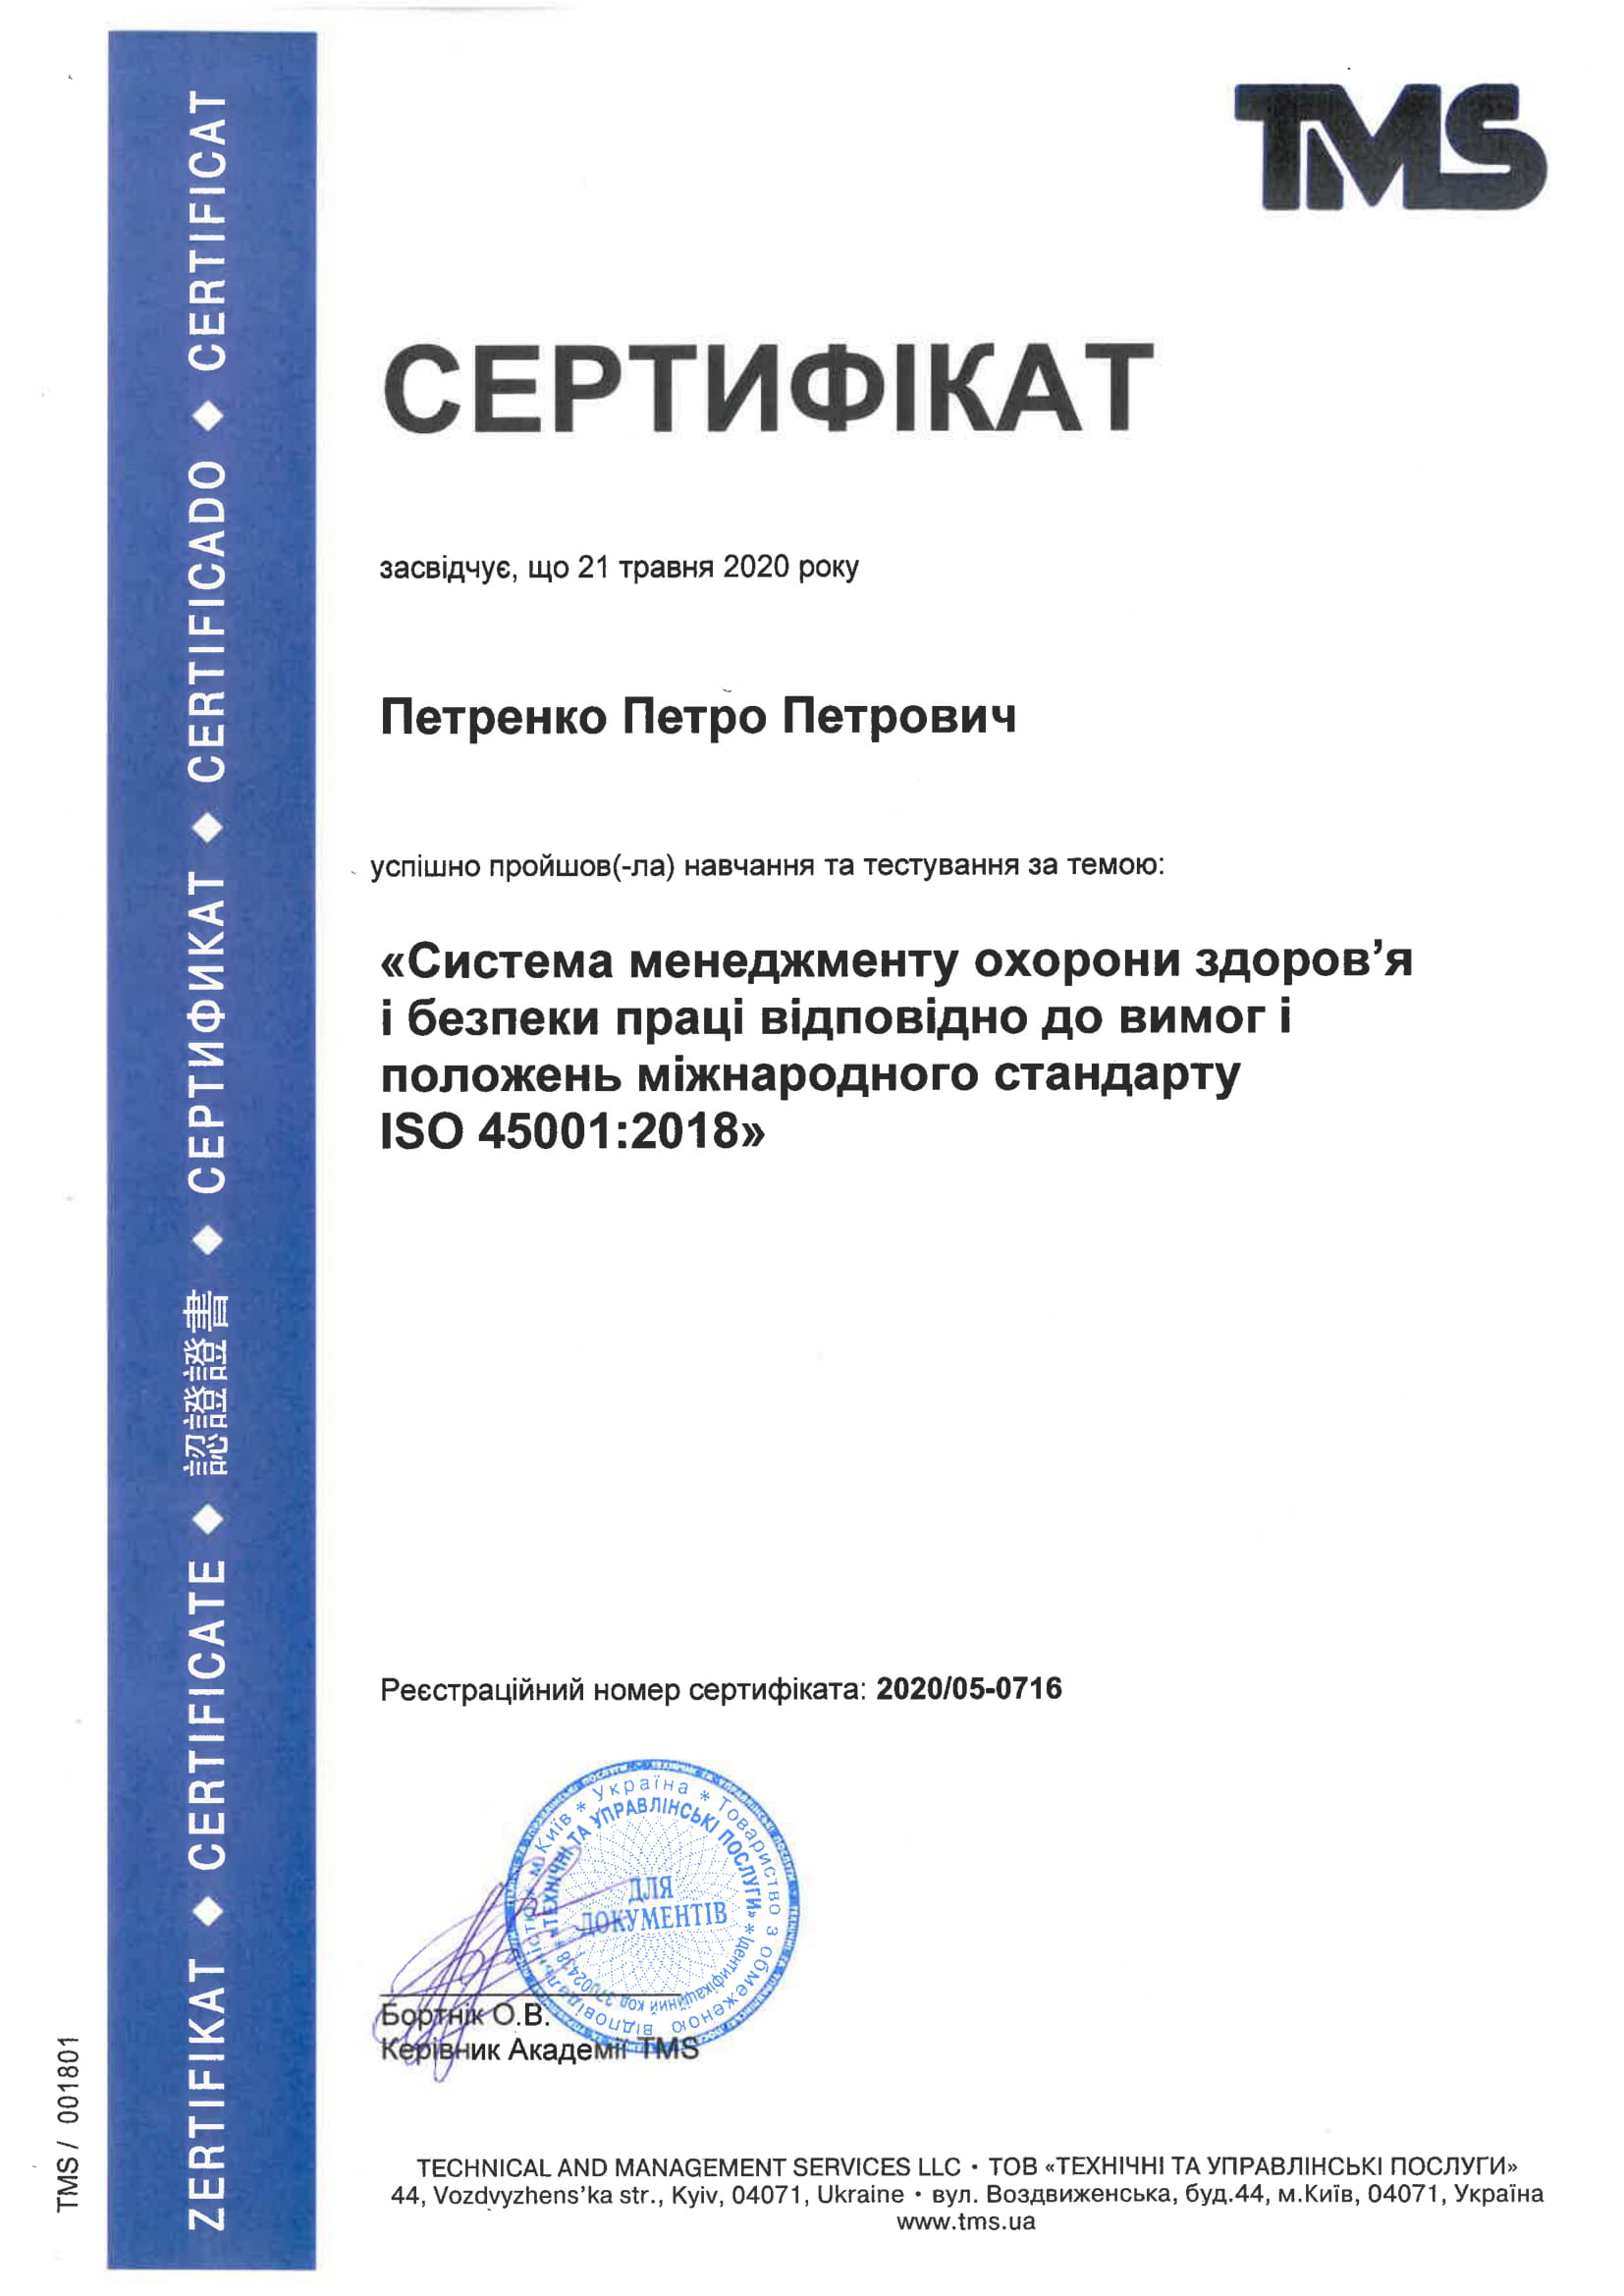 Пример сертификата о прохождении обучения по ISO 45001:2018